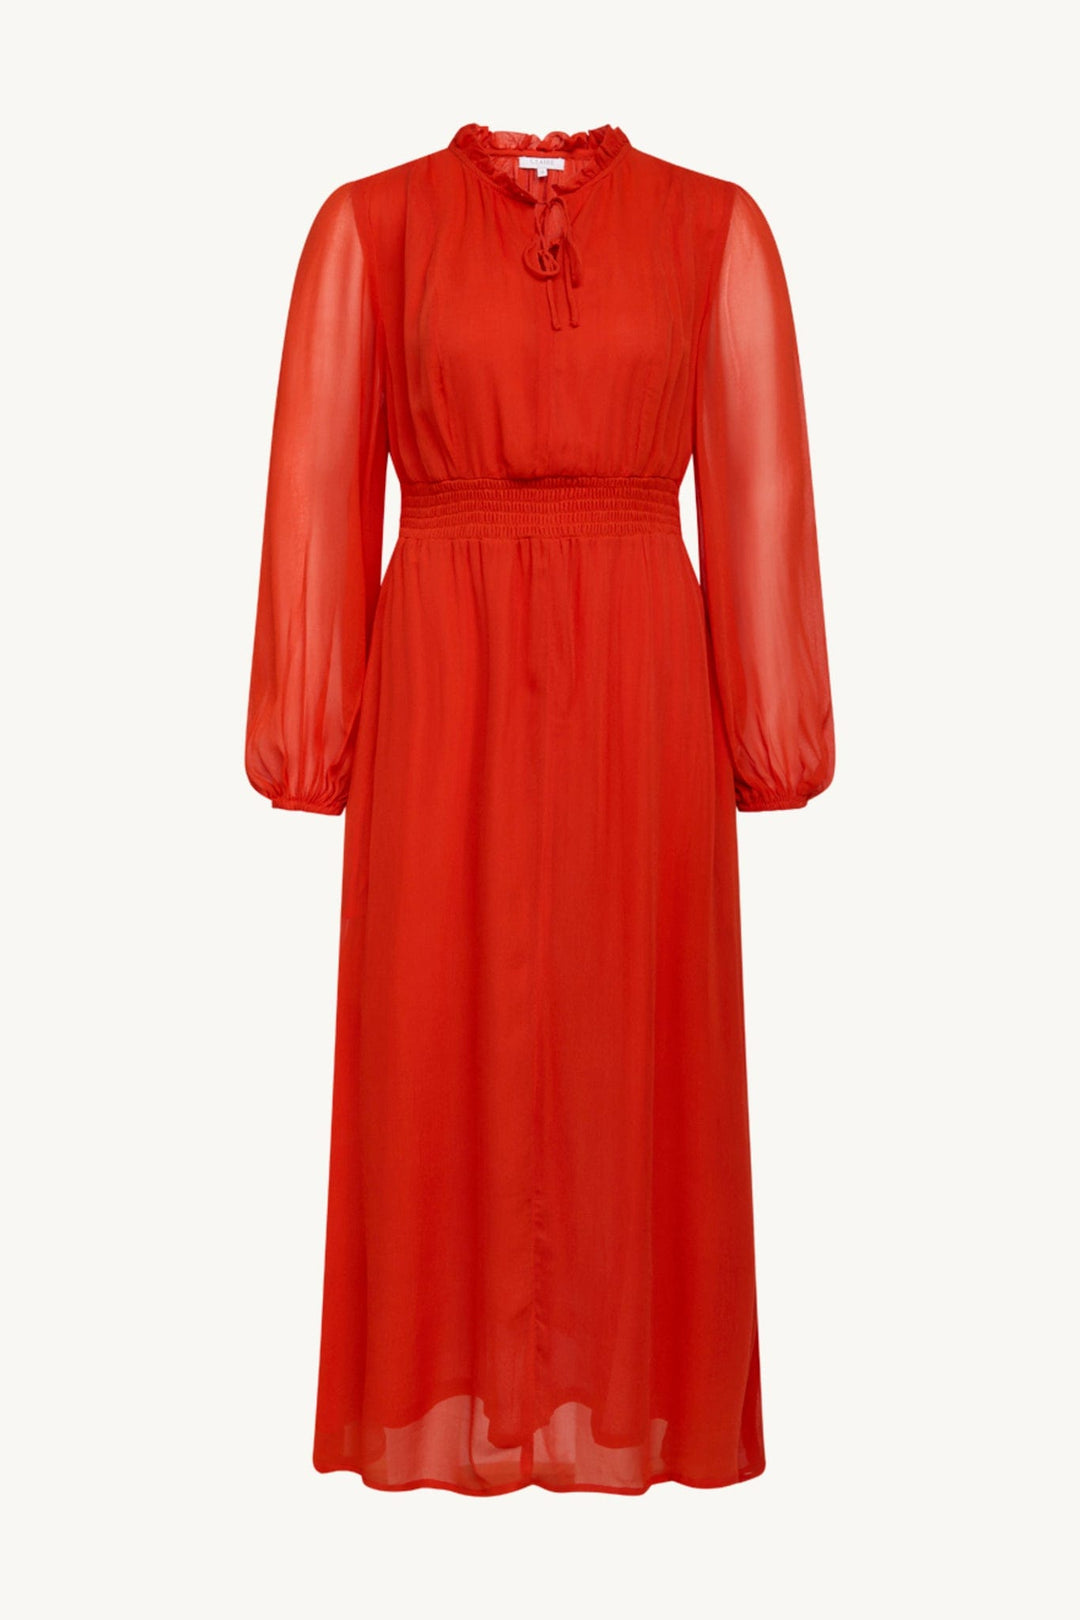 Dotta-Cw - Dress Red Poppy | Kjoler | Smuk - Dameklær på nett